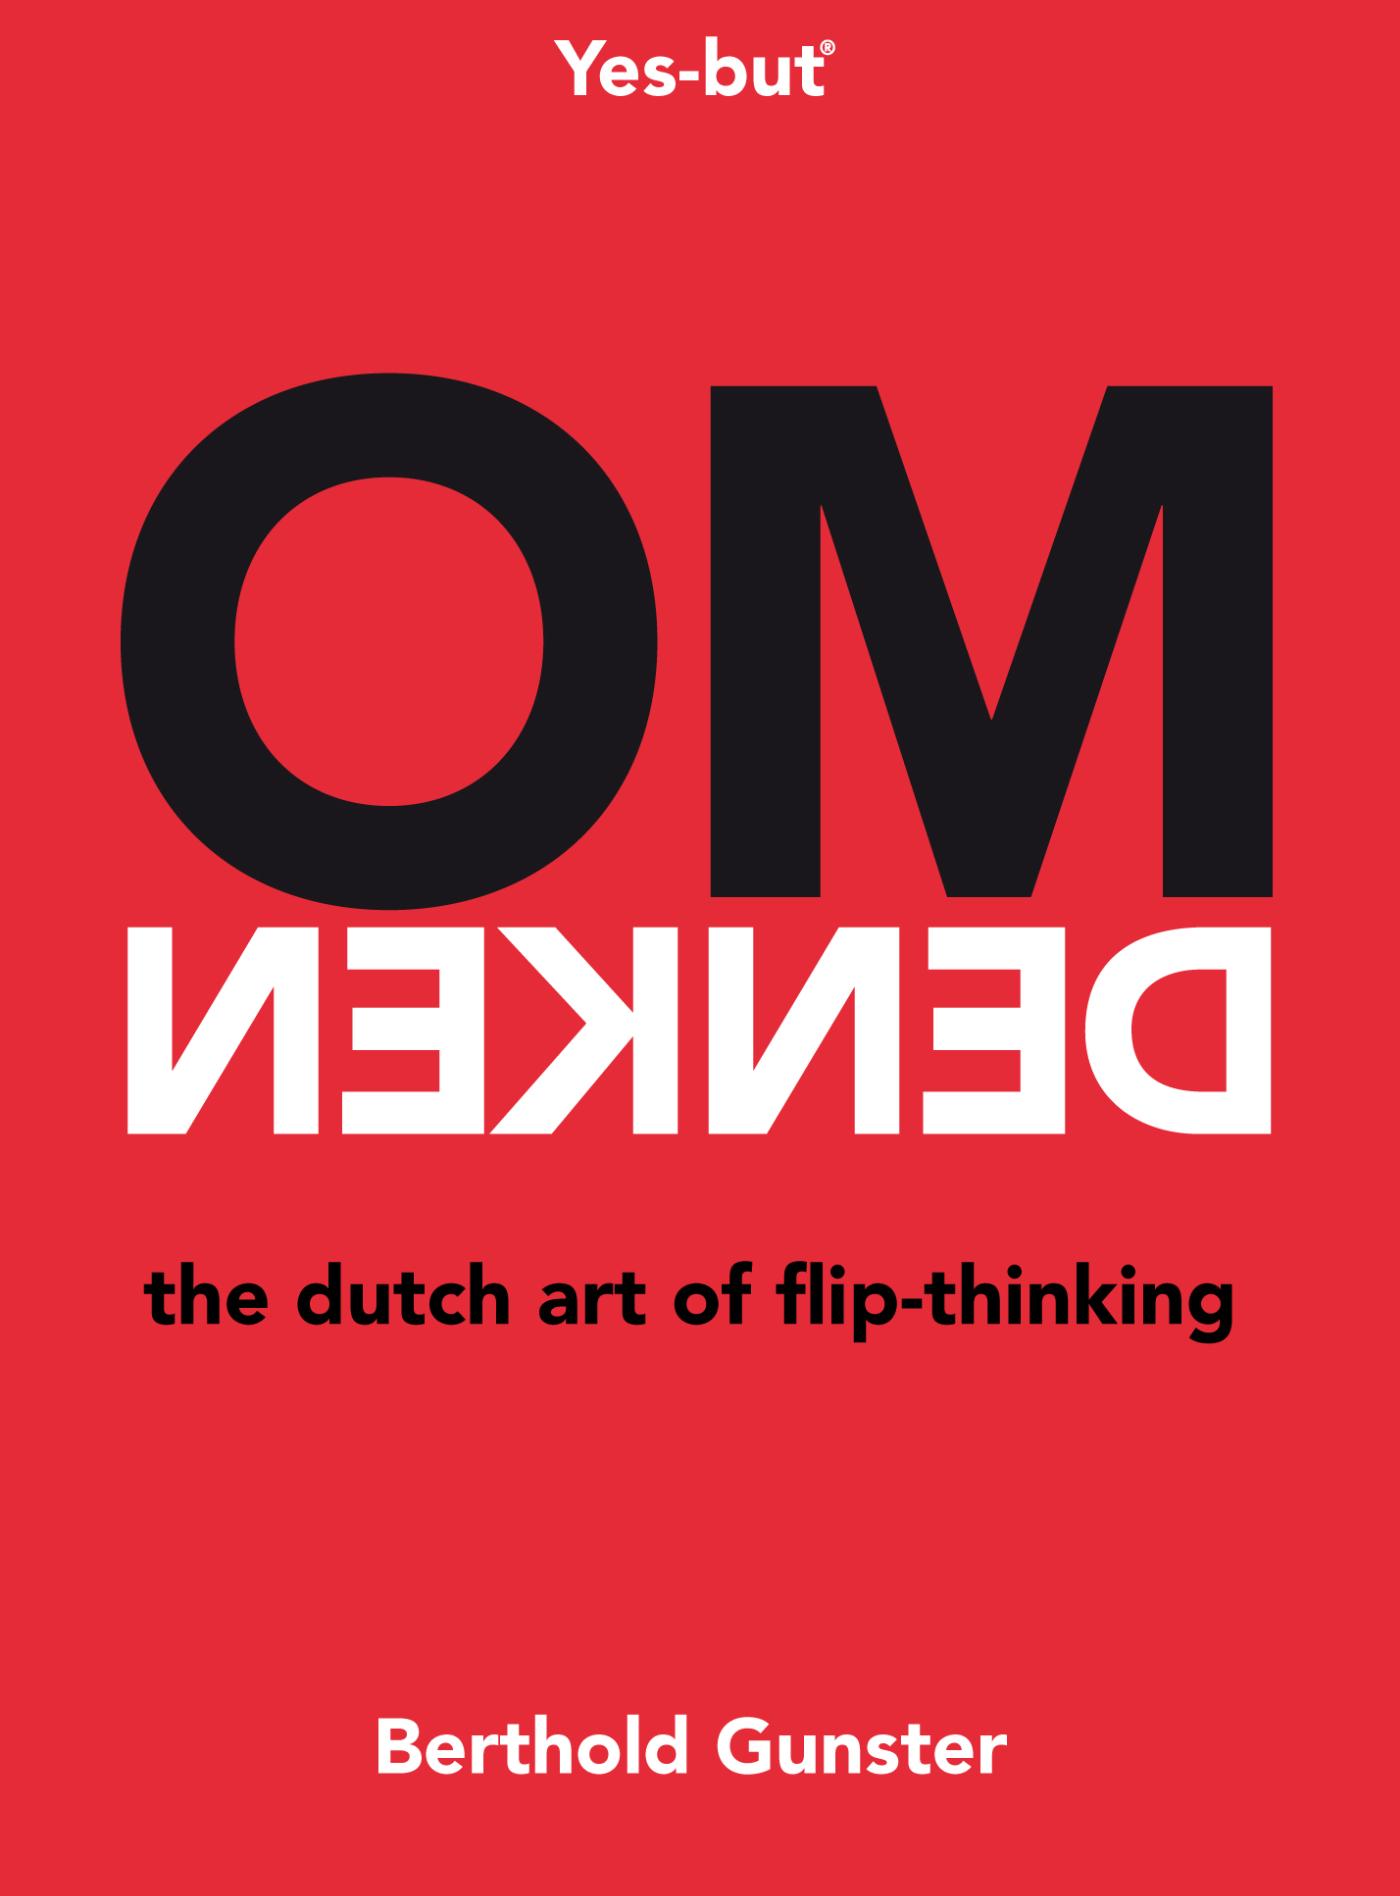 Omdenken, the Dutch art of flip-thinking